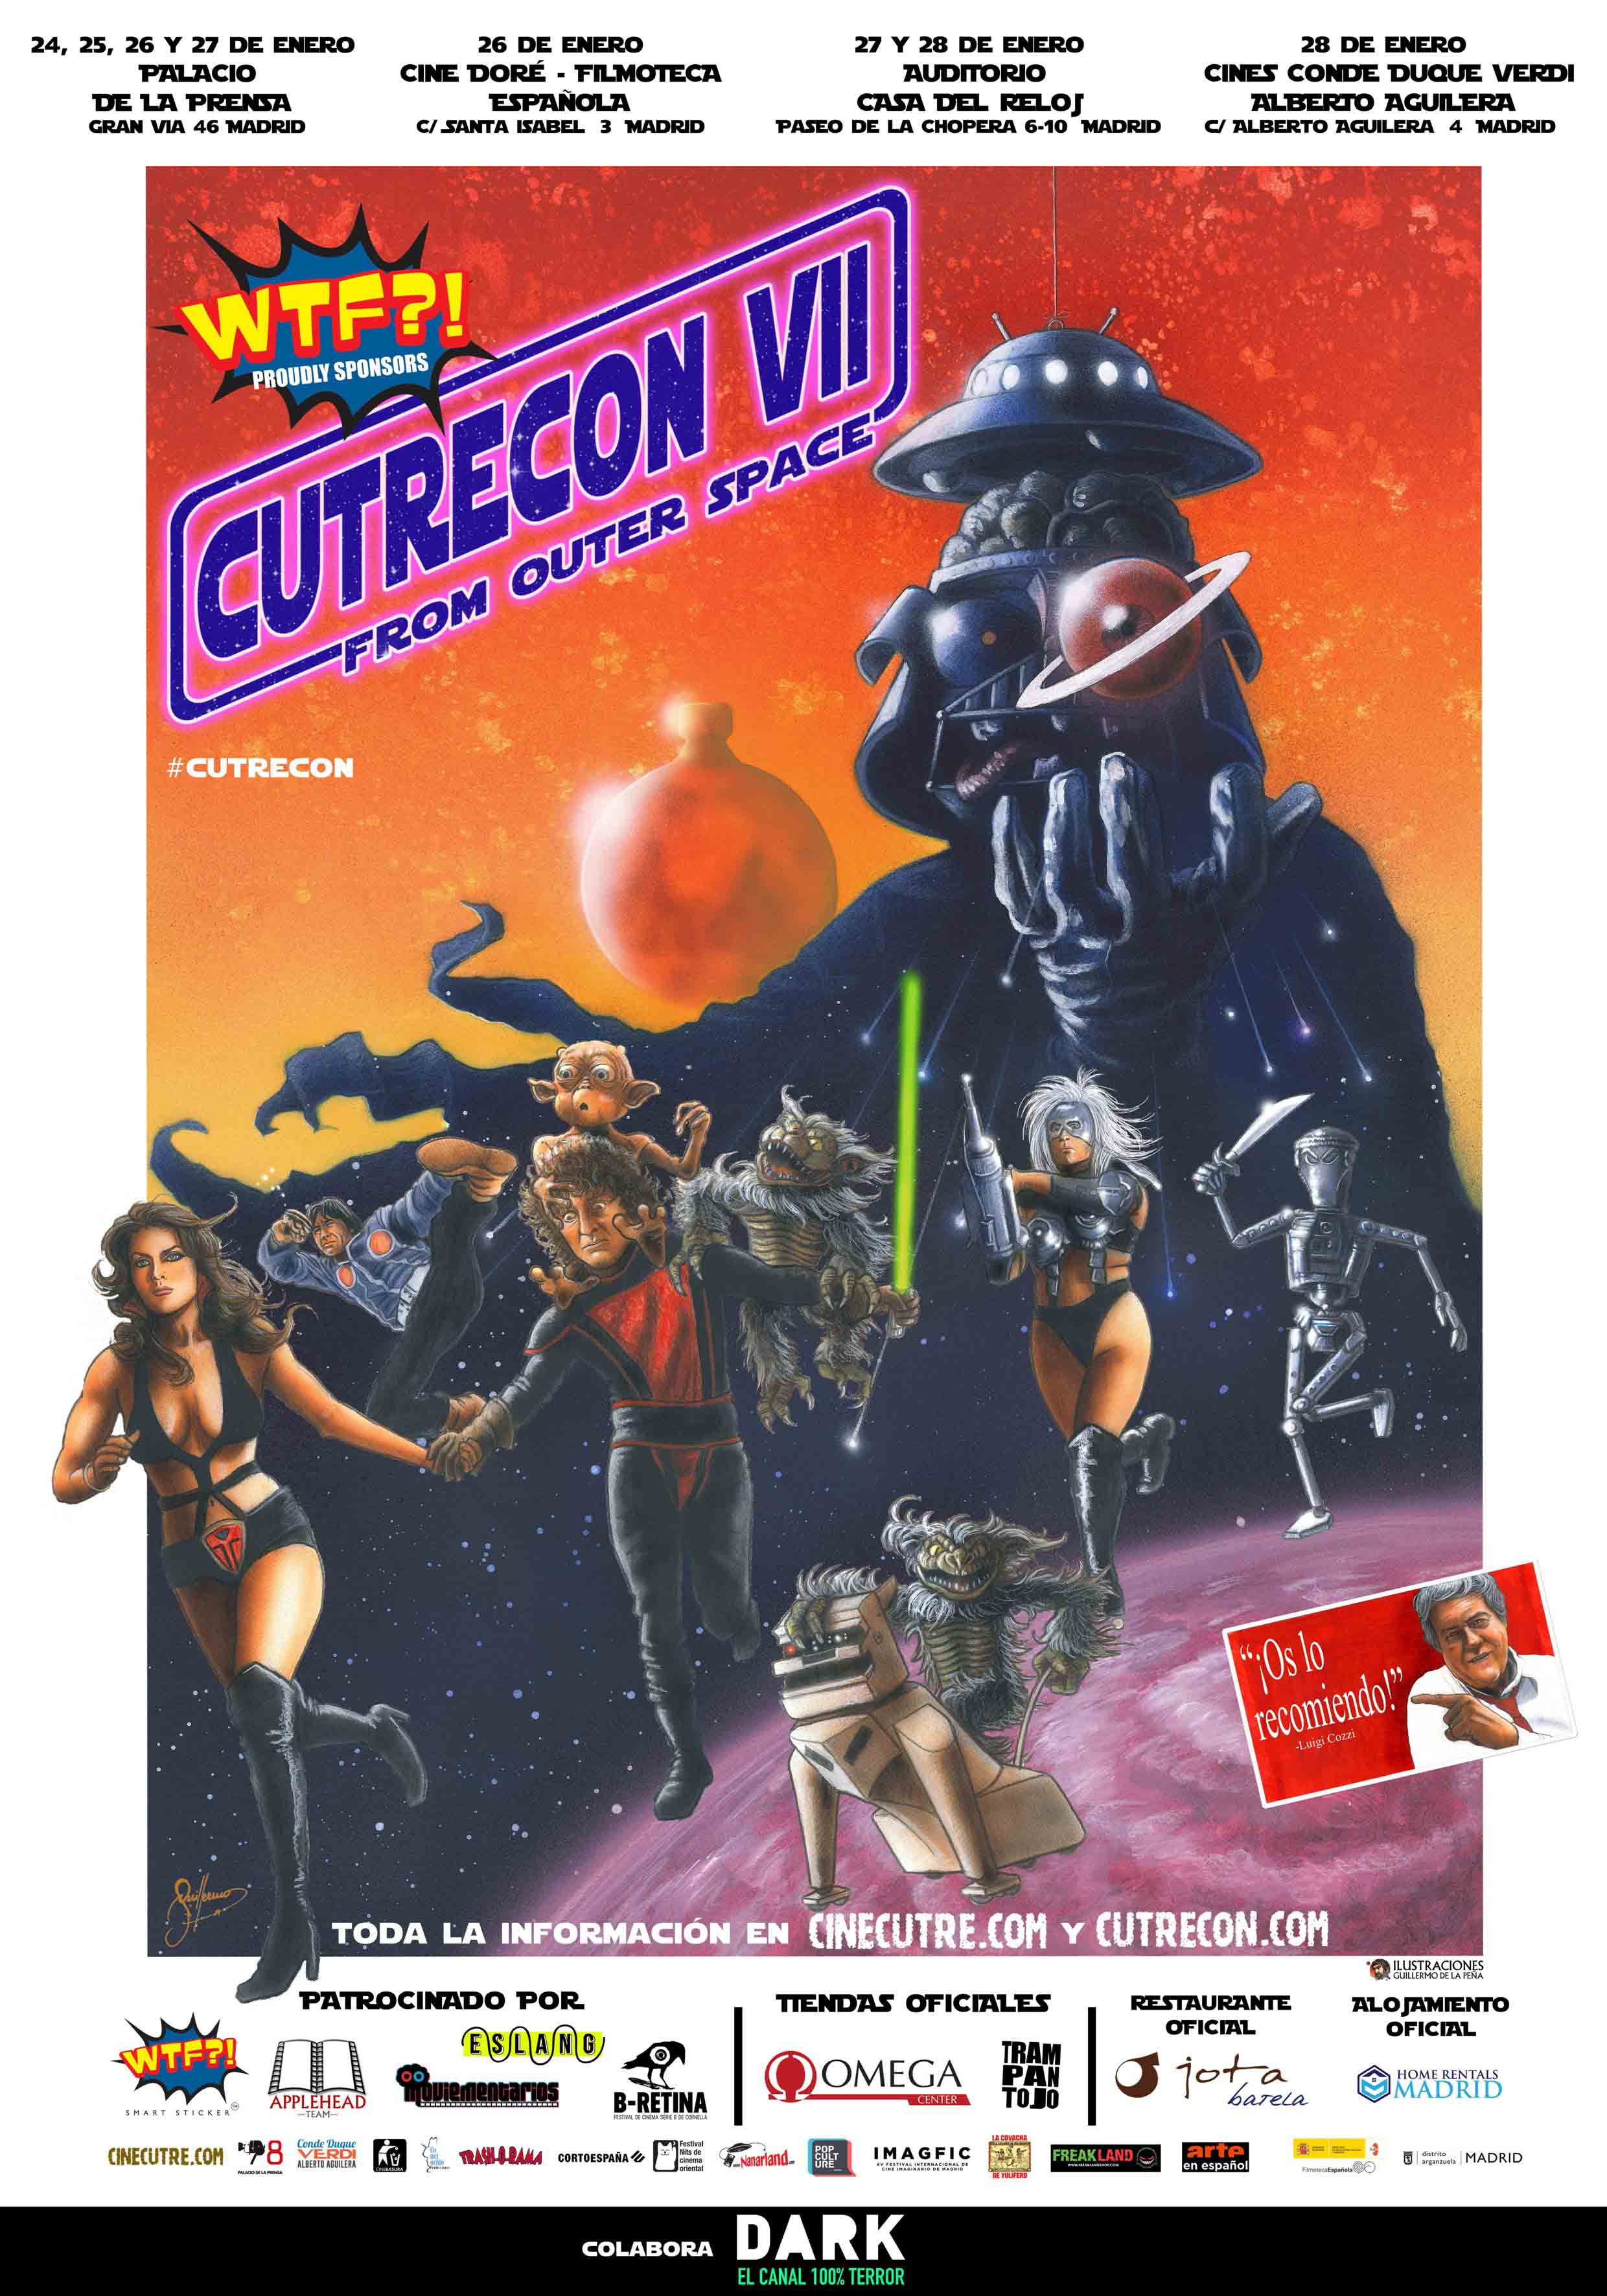 Gana un pack de merchandising de CutreCon VII